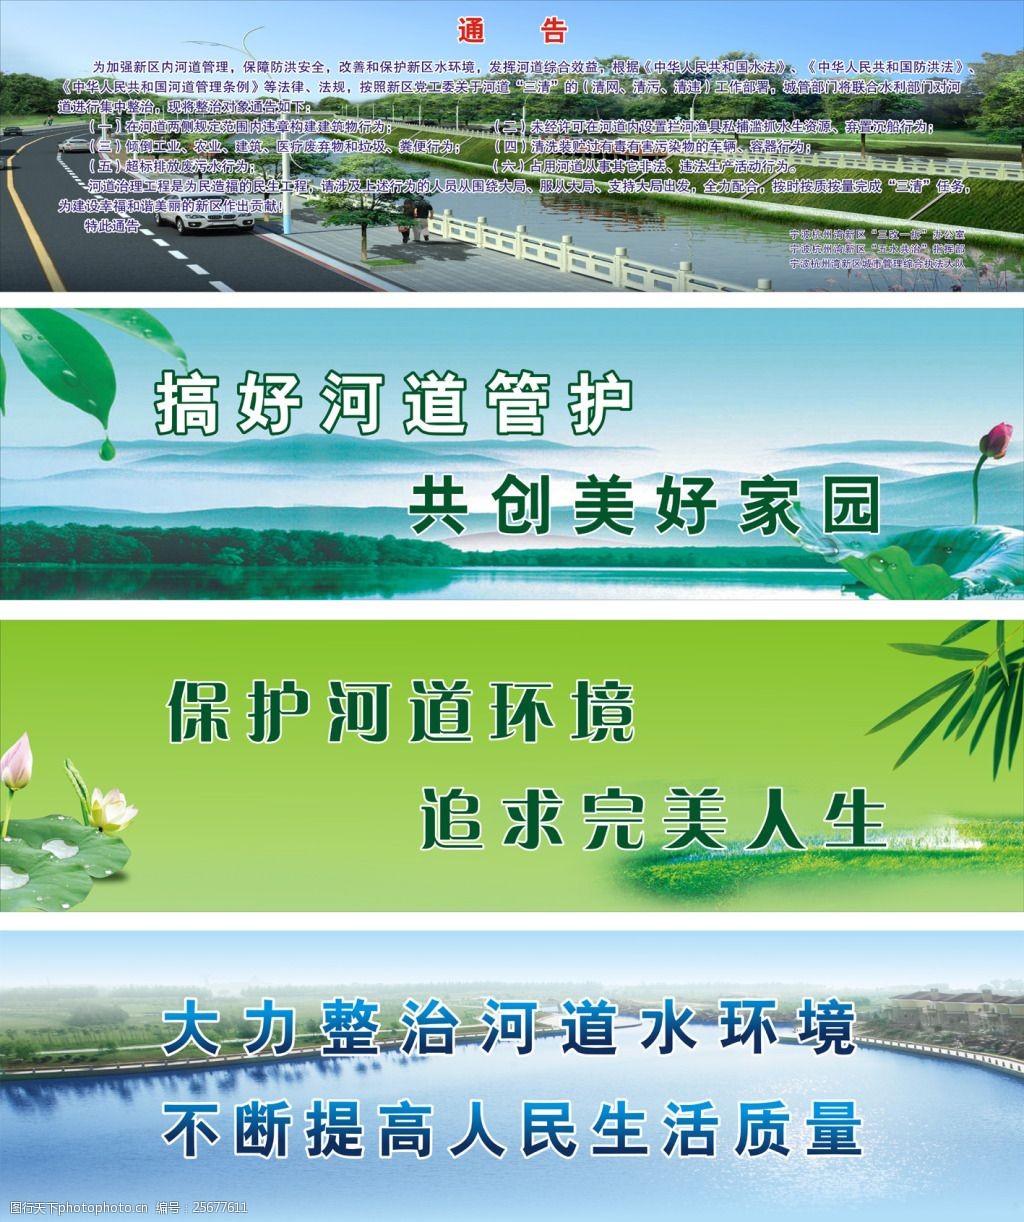 关键词:五水共治标语画面 五水共治 环保 保护环境 河道 生态 cdr